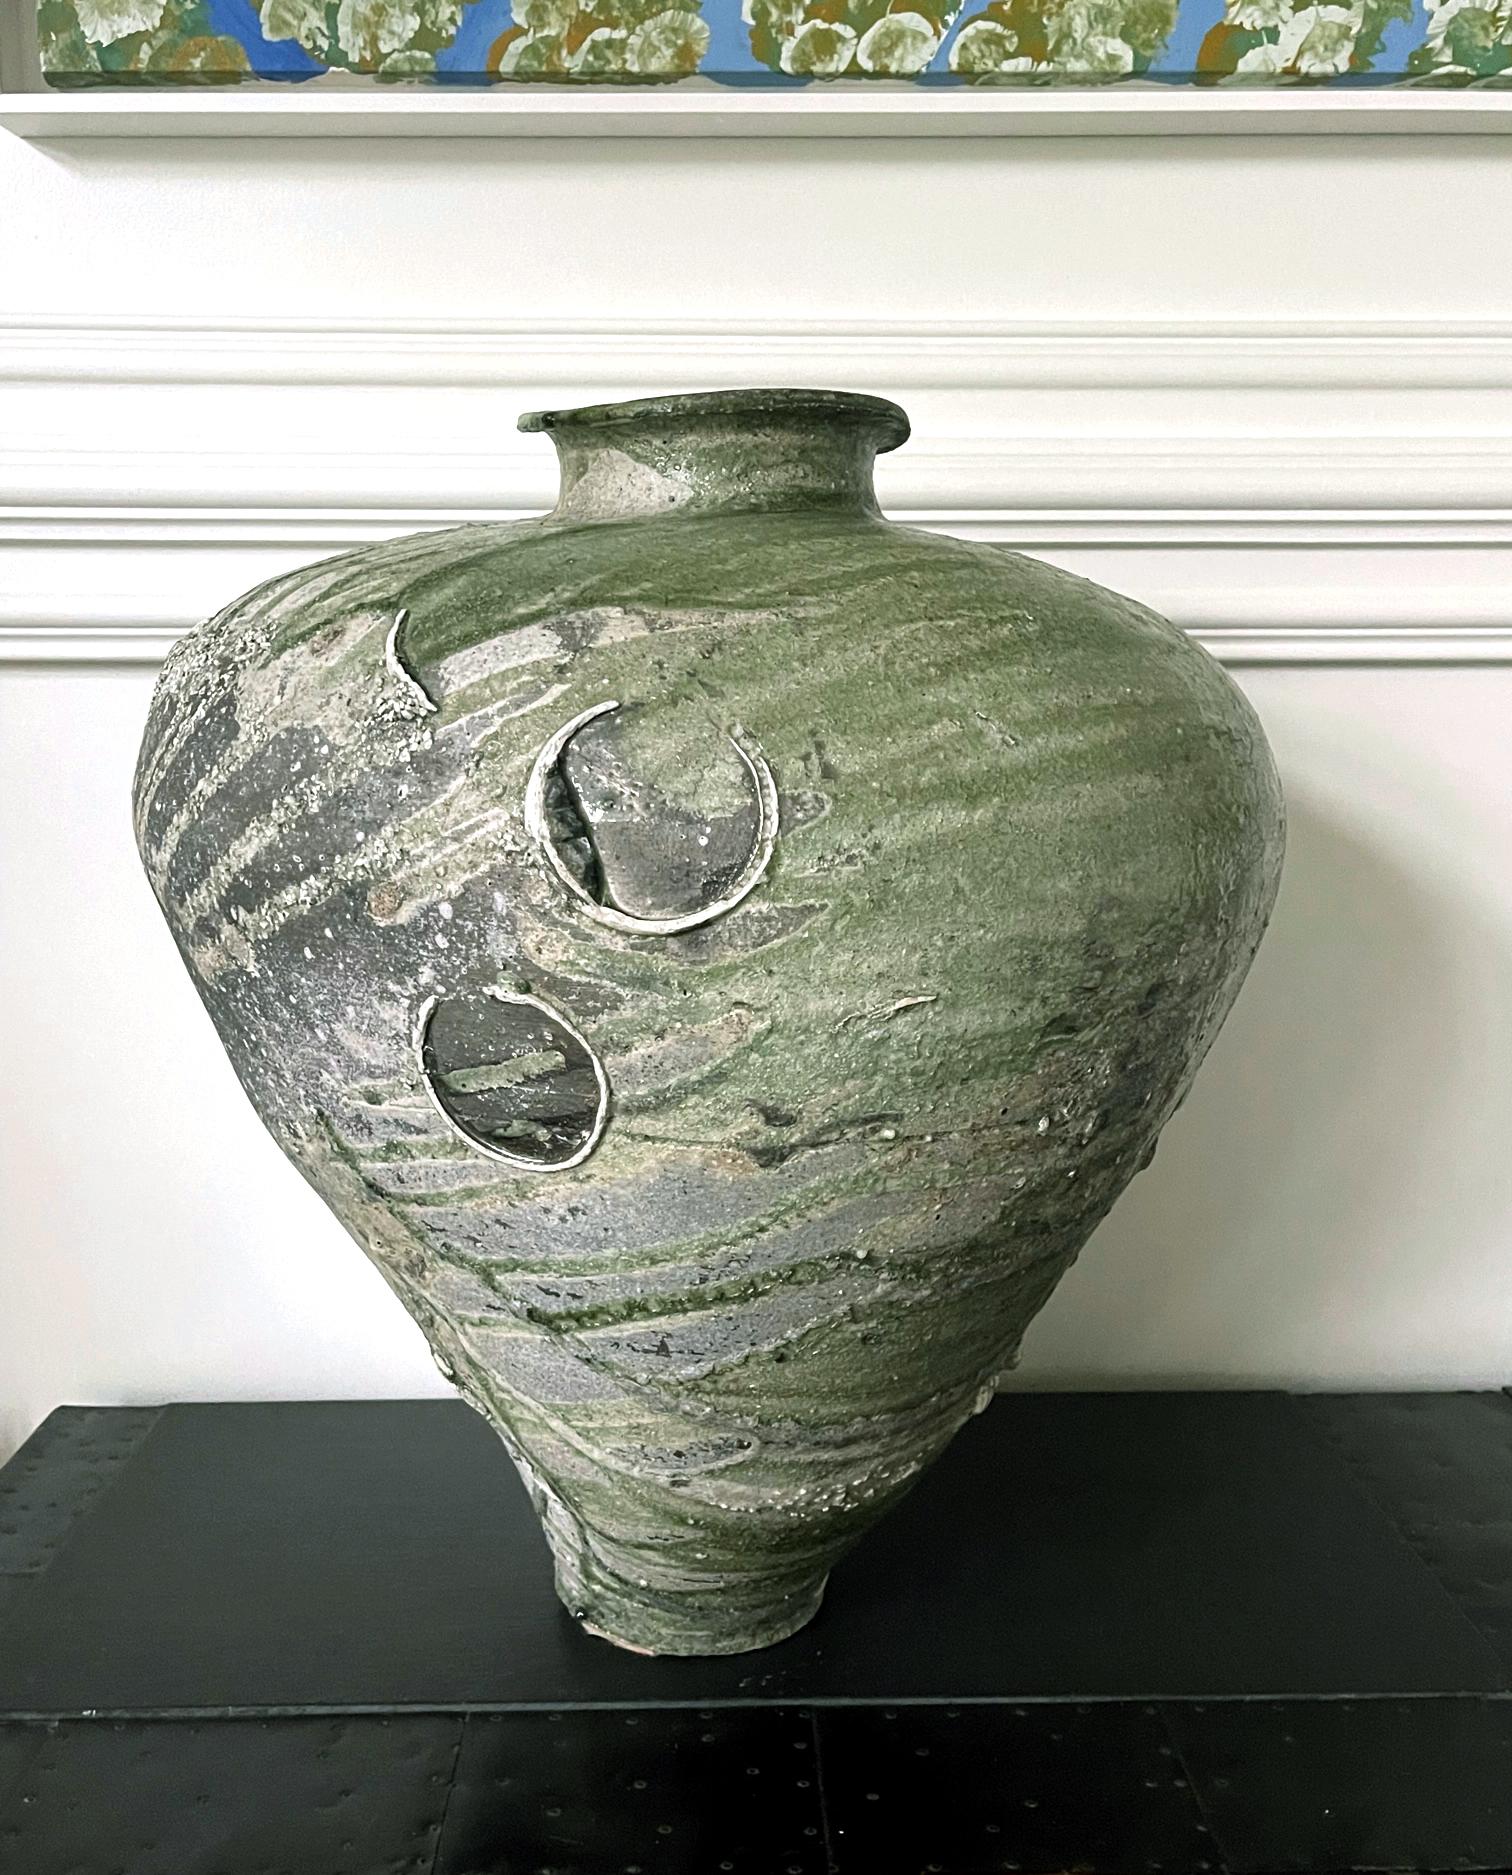 Une massive et magnifique jarre Tsubo en céramique du potier japonais Tsujimura Yui (1975-). Inspiré par les techniques et l'esthétique de la vaisselle de Sue du début du Moyen Âge, l'artiste construit à la main un impressionnant ovale volumineux,